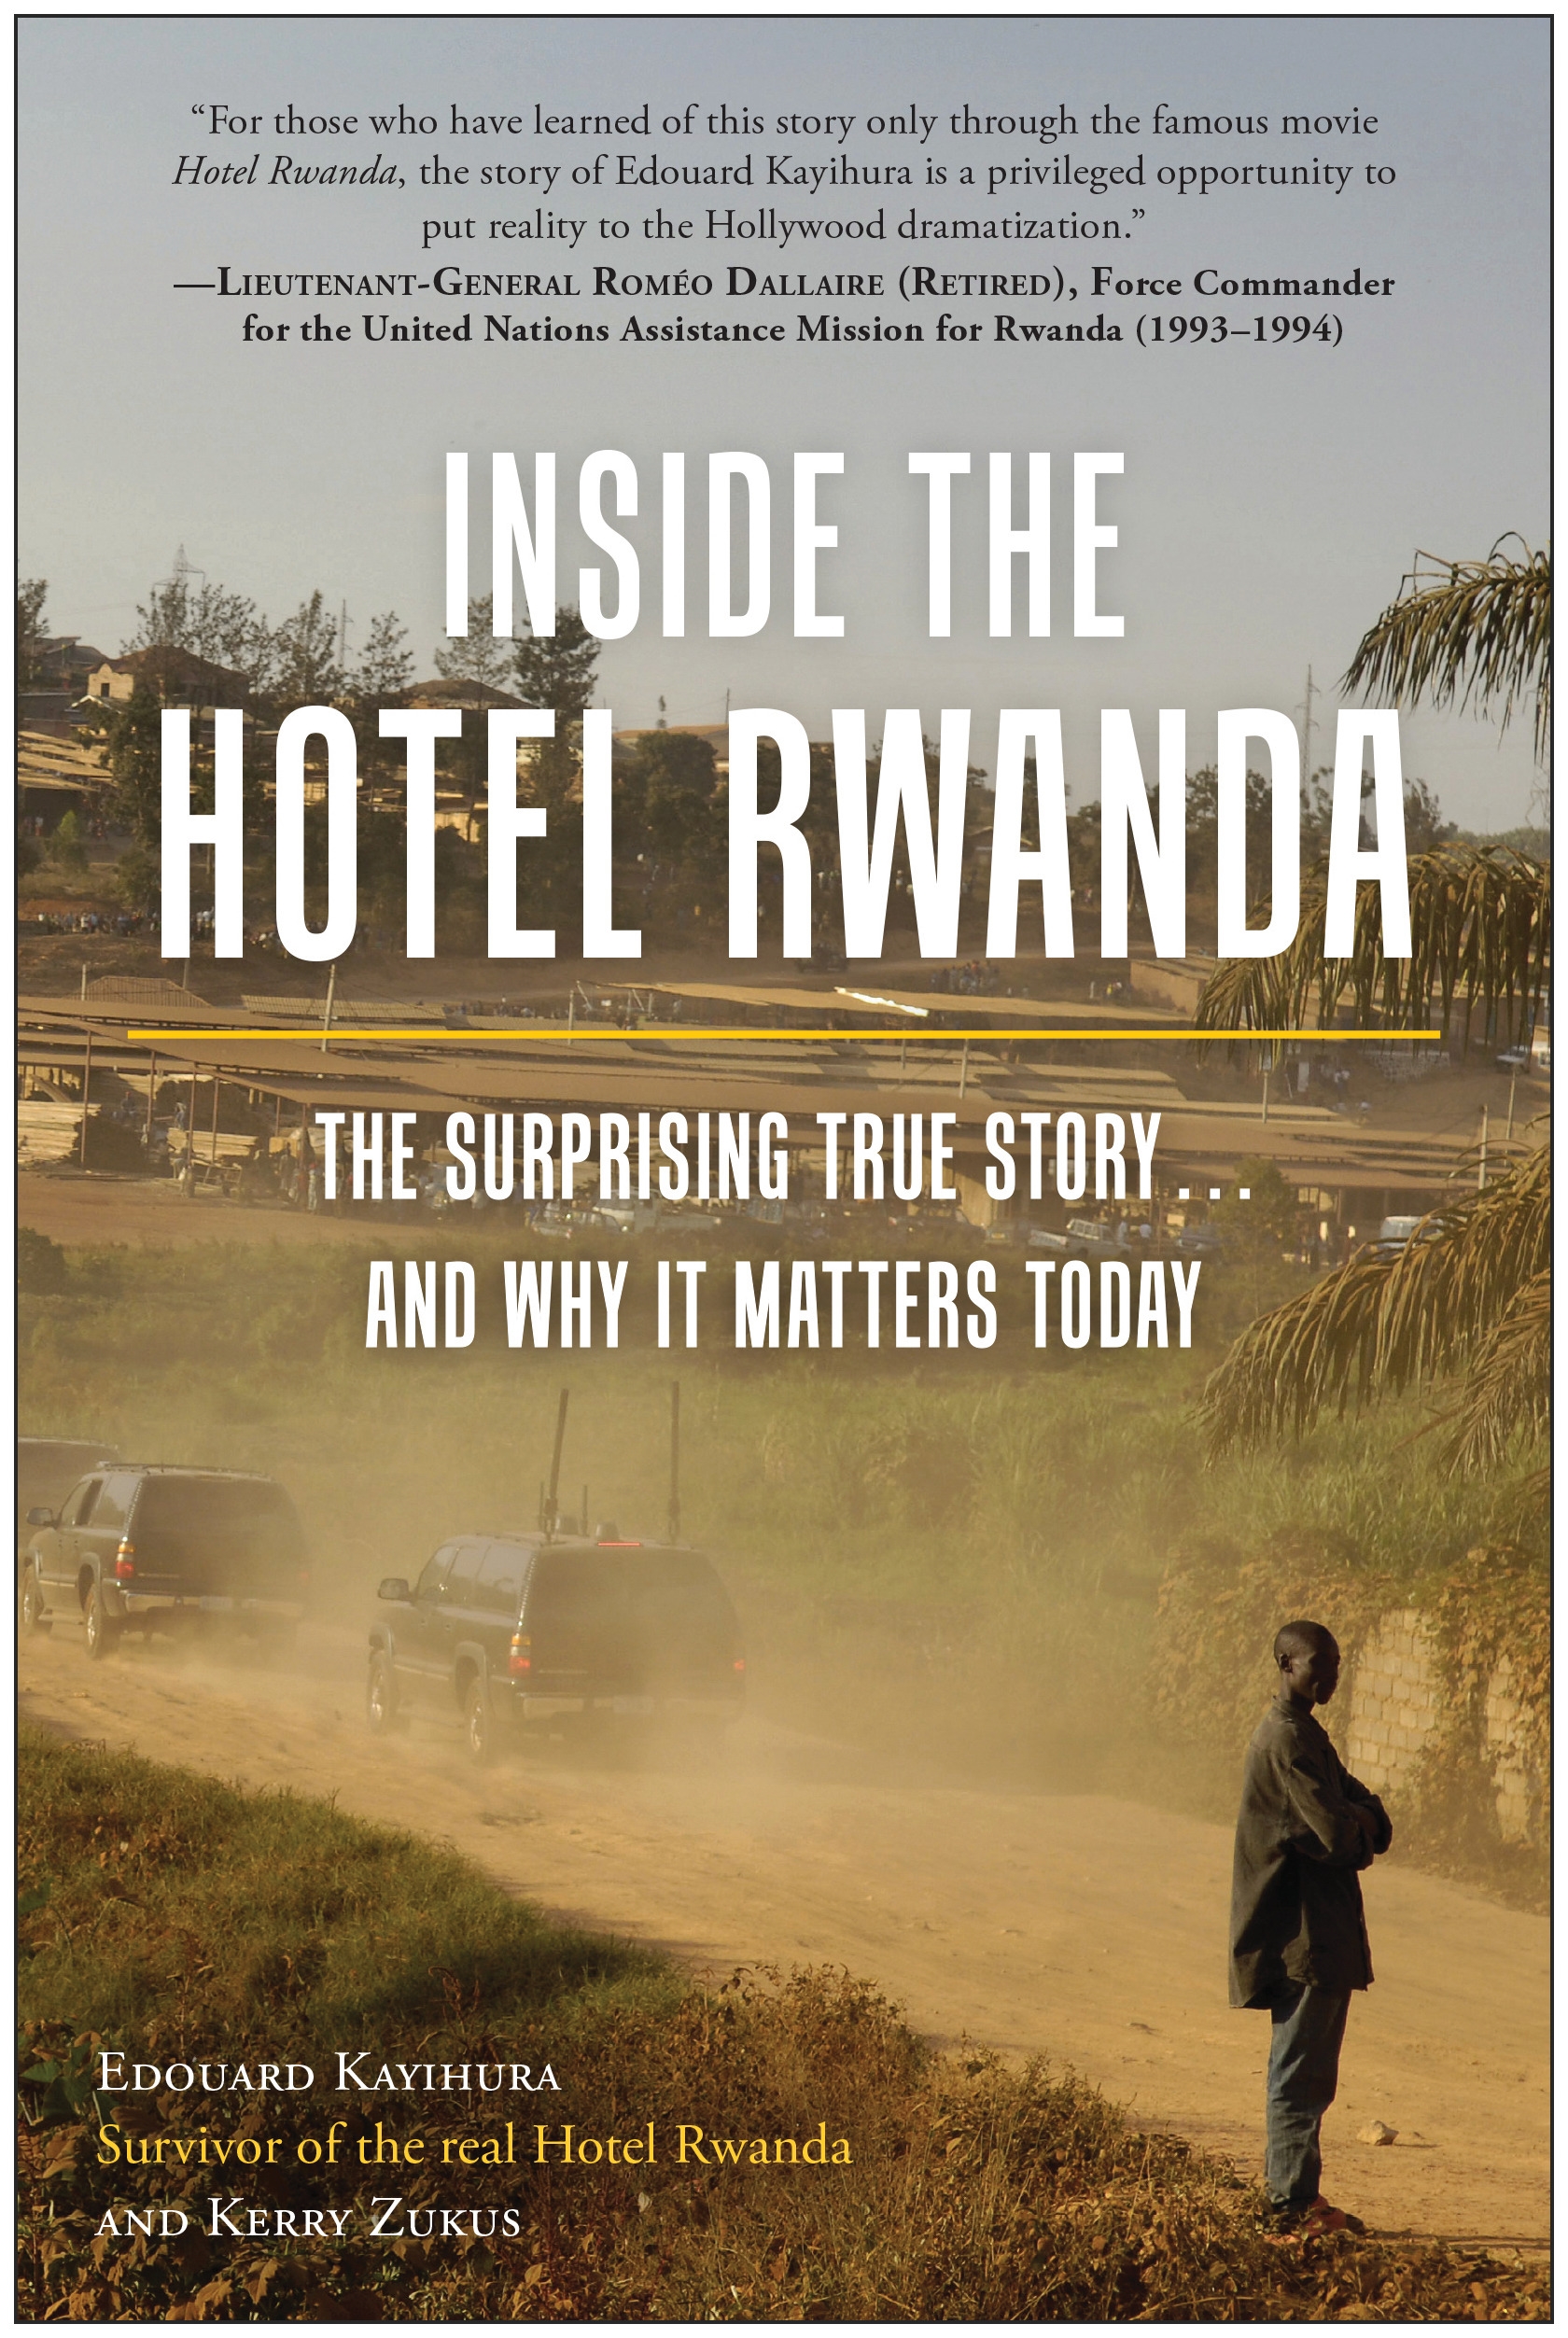 hotel rwanda summary and analysis